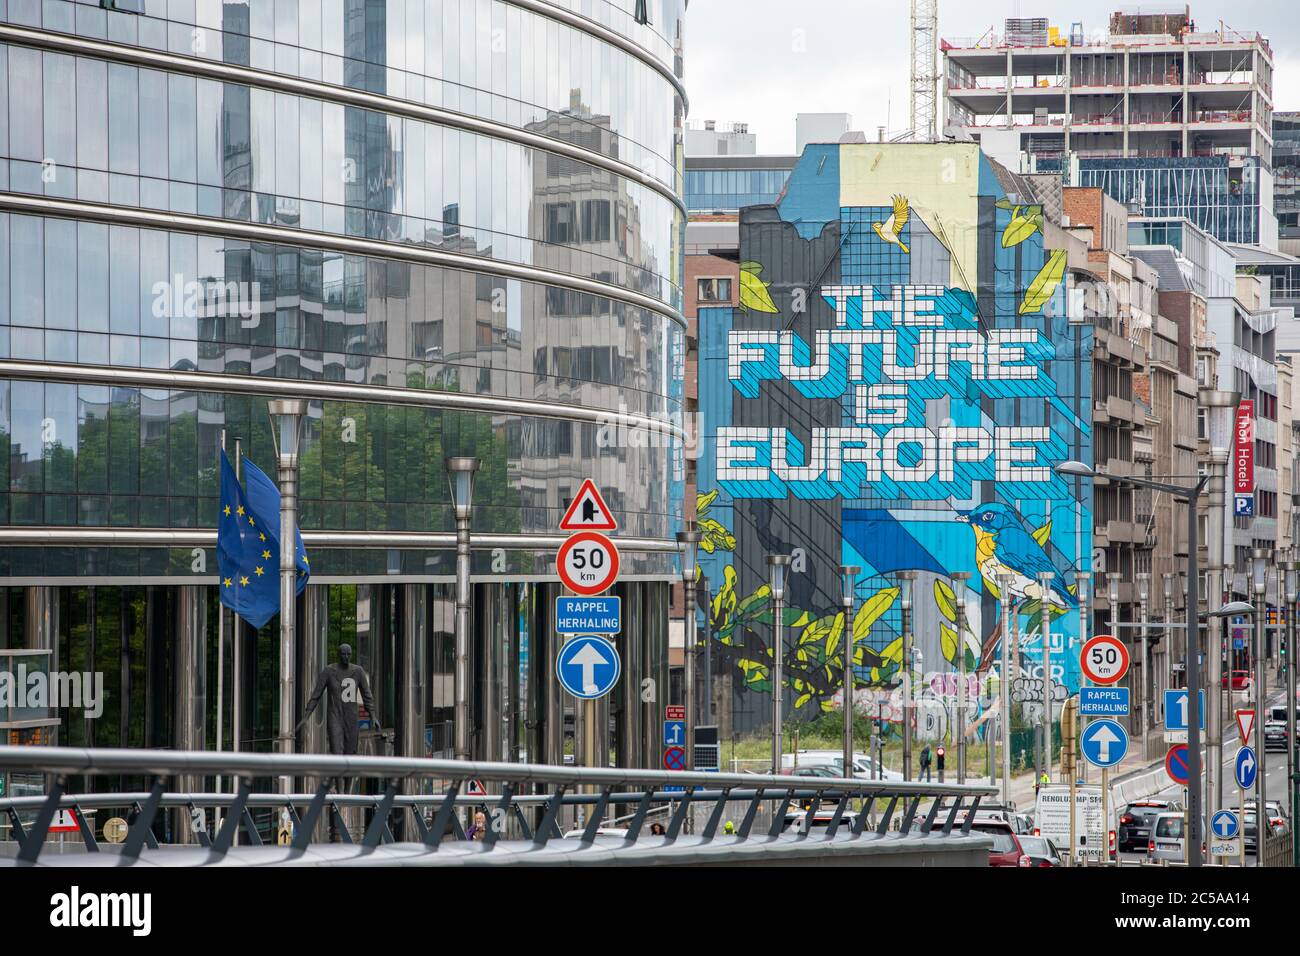 BRUSELAS, Bélgica - 1 de julio de 2020: Vista de una pintura urbana en el barrio europeo de Bruselas diciendo "el futuro es Europa" Foto de stock